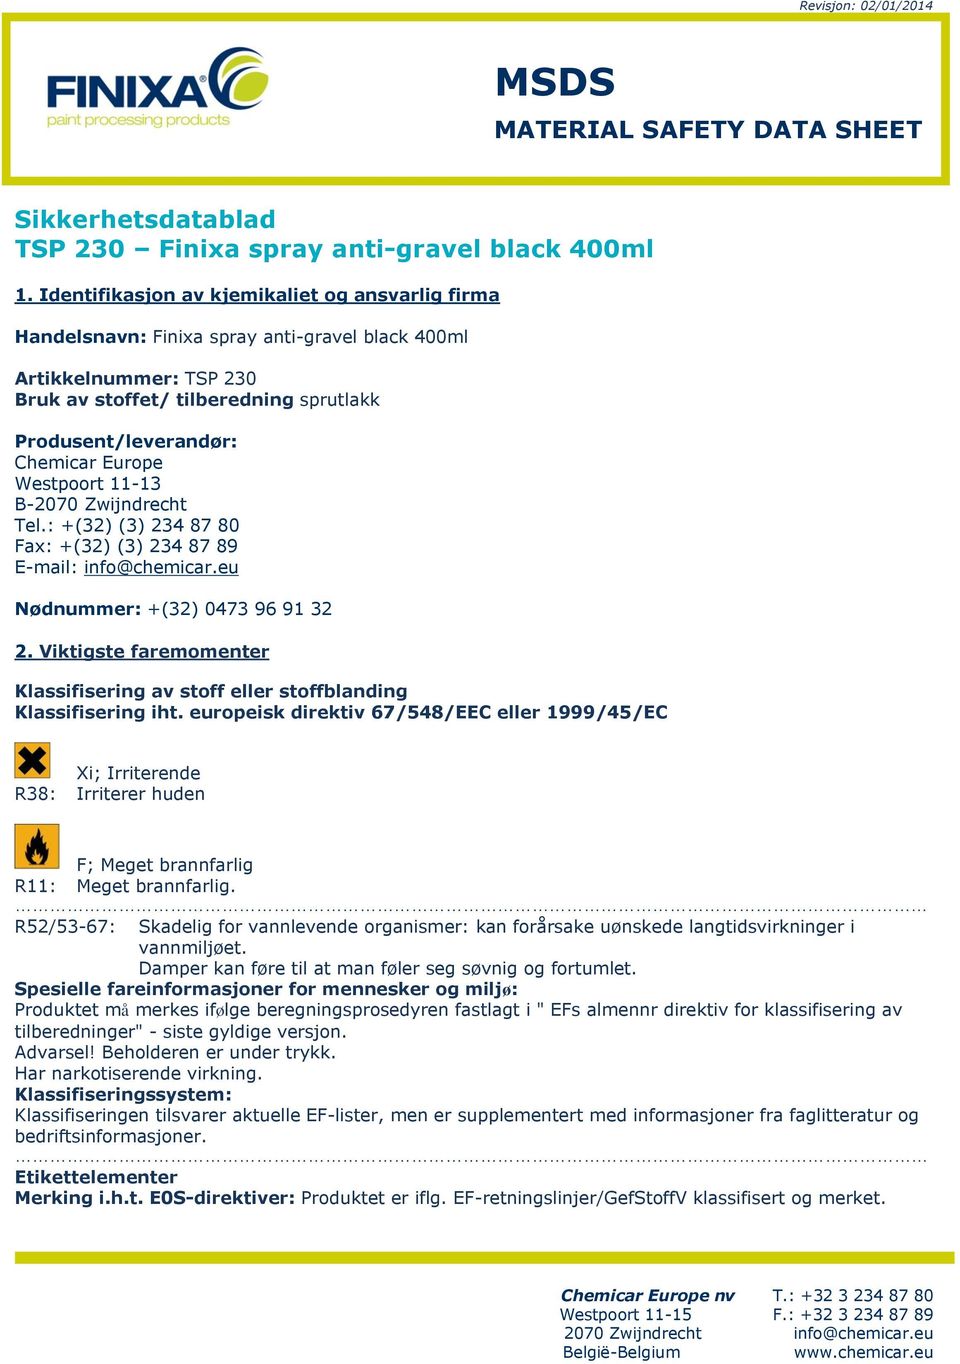 Europe Westpoort 11-13 B-2070 Zwijndrecht Tel.: +(32) (3) 234 87 80 Fax: +(32) (3) 234 87 89 E-mail: info@chemicar.eu Nødnummer: +(32) 0473 96 91 32 2.